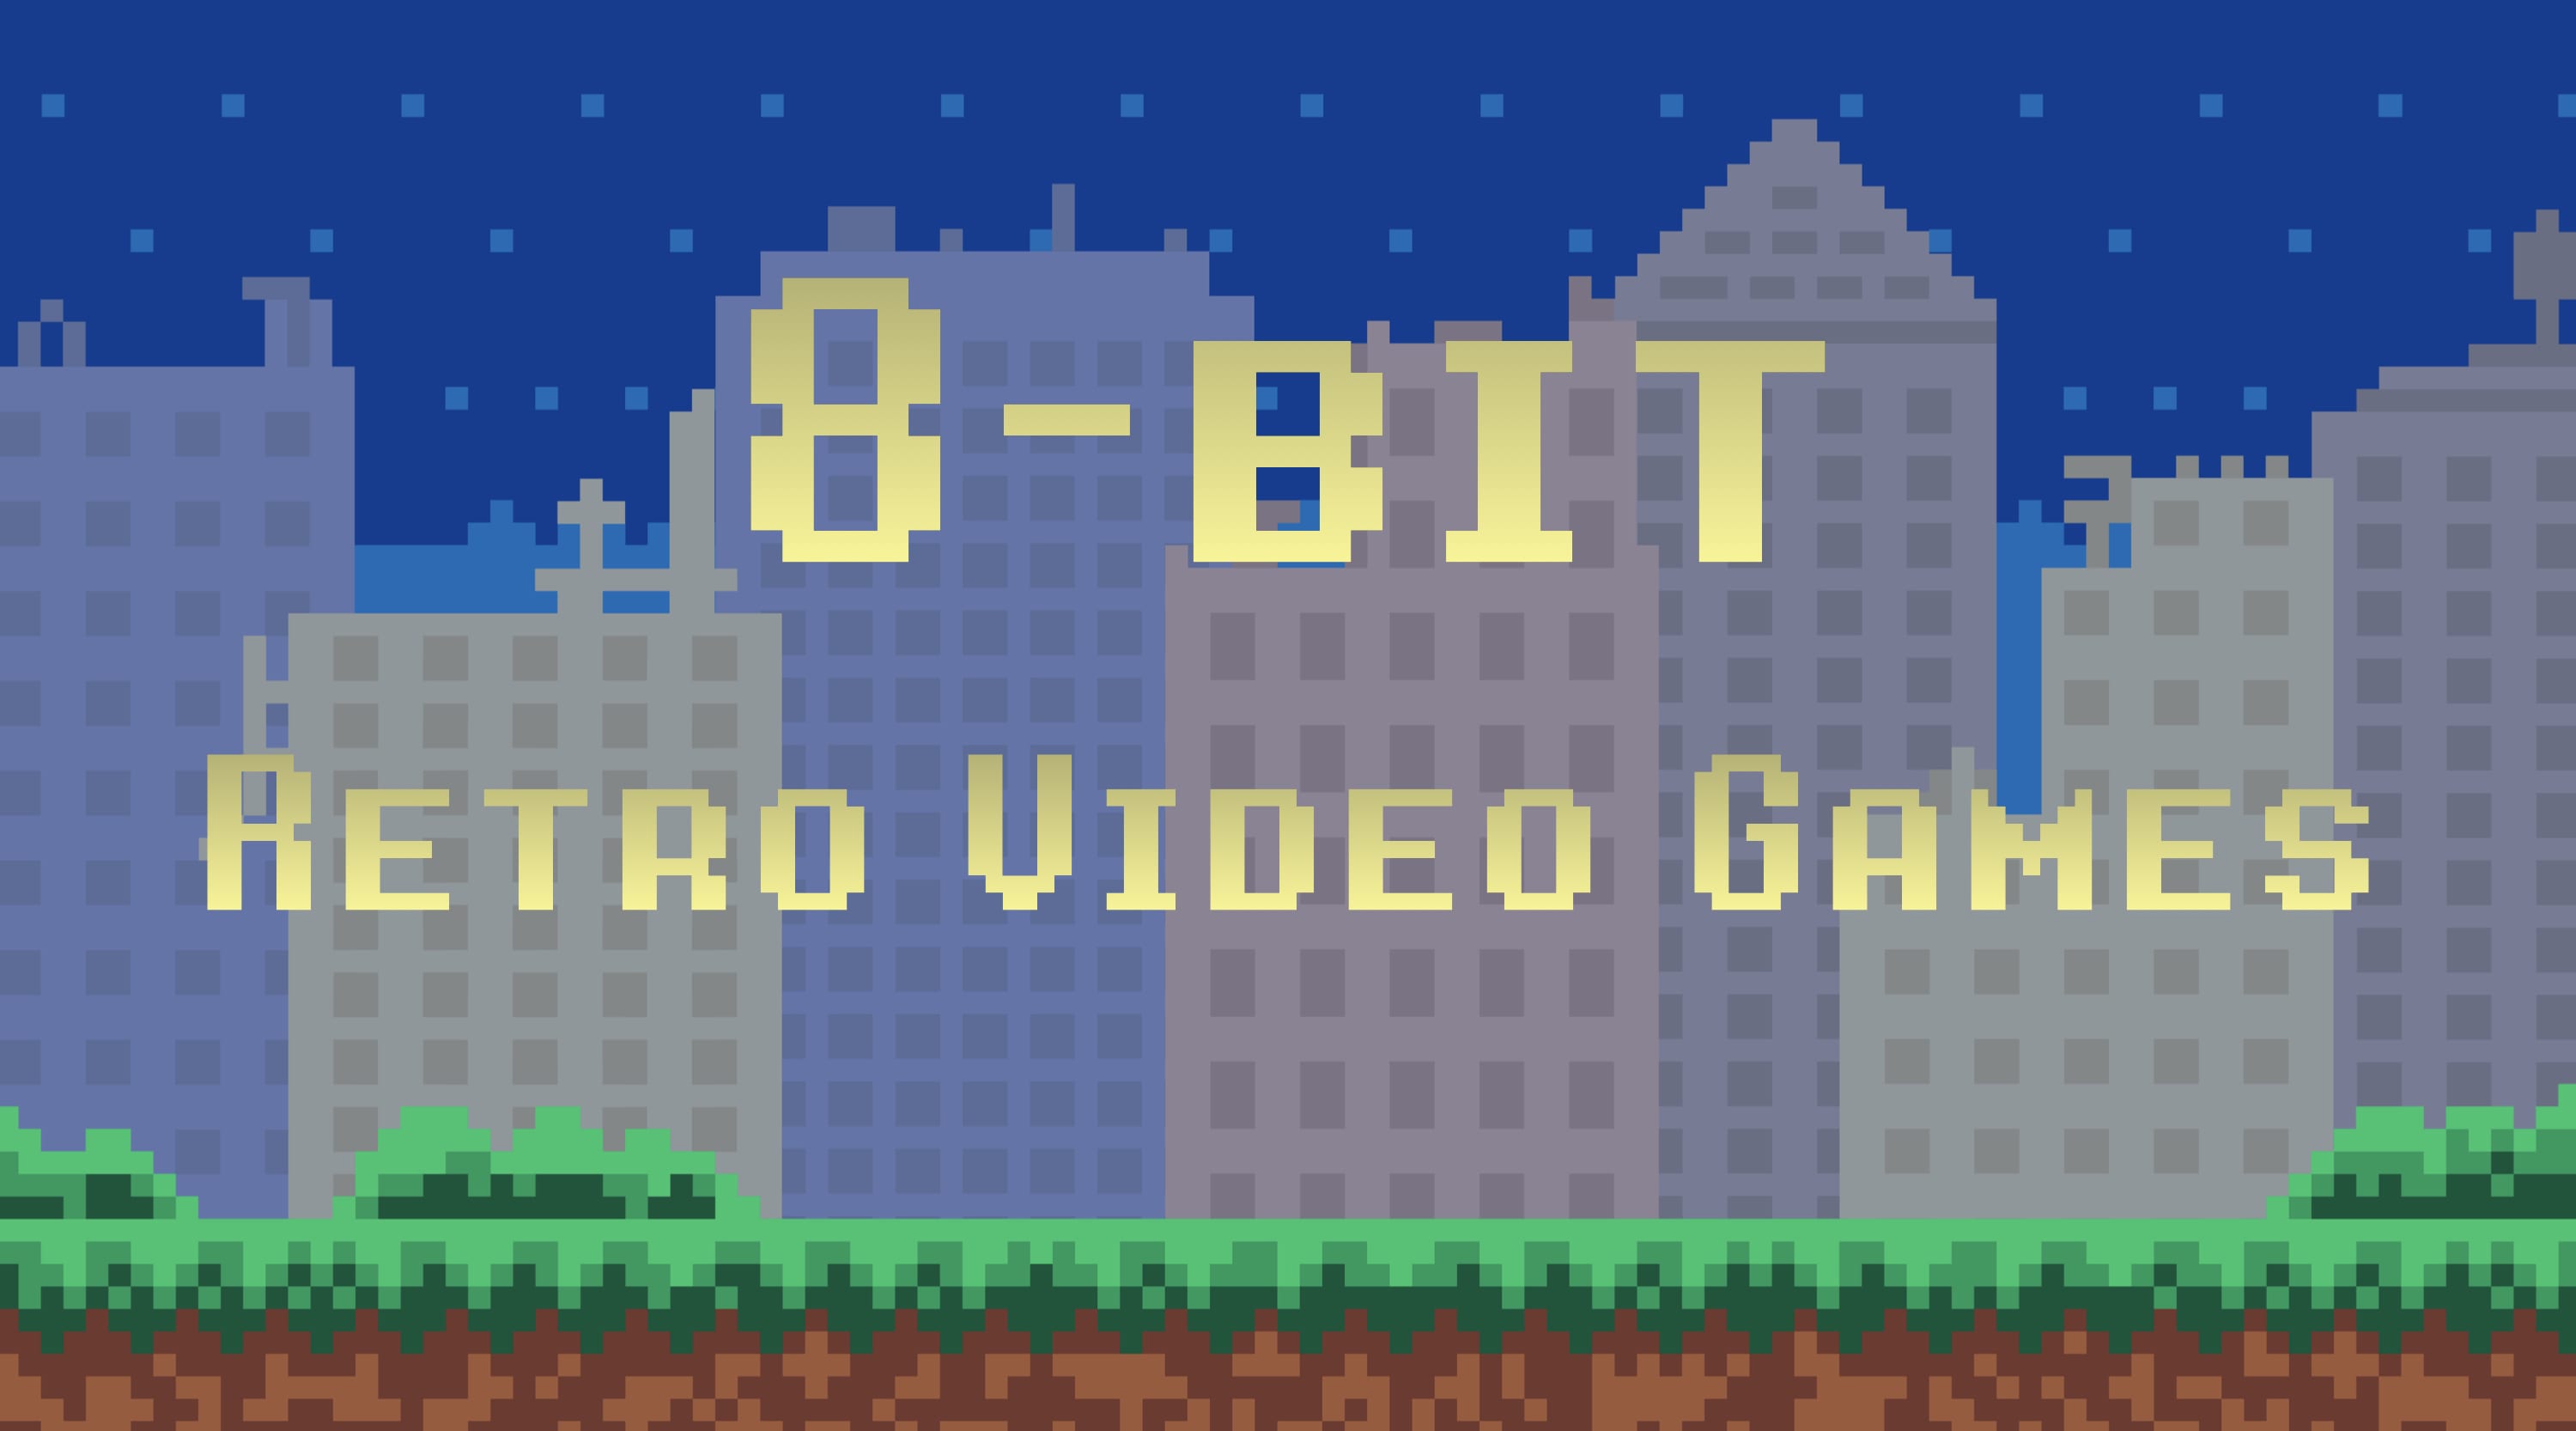 8-Bit: Retro Video Games